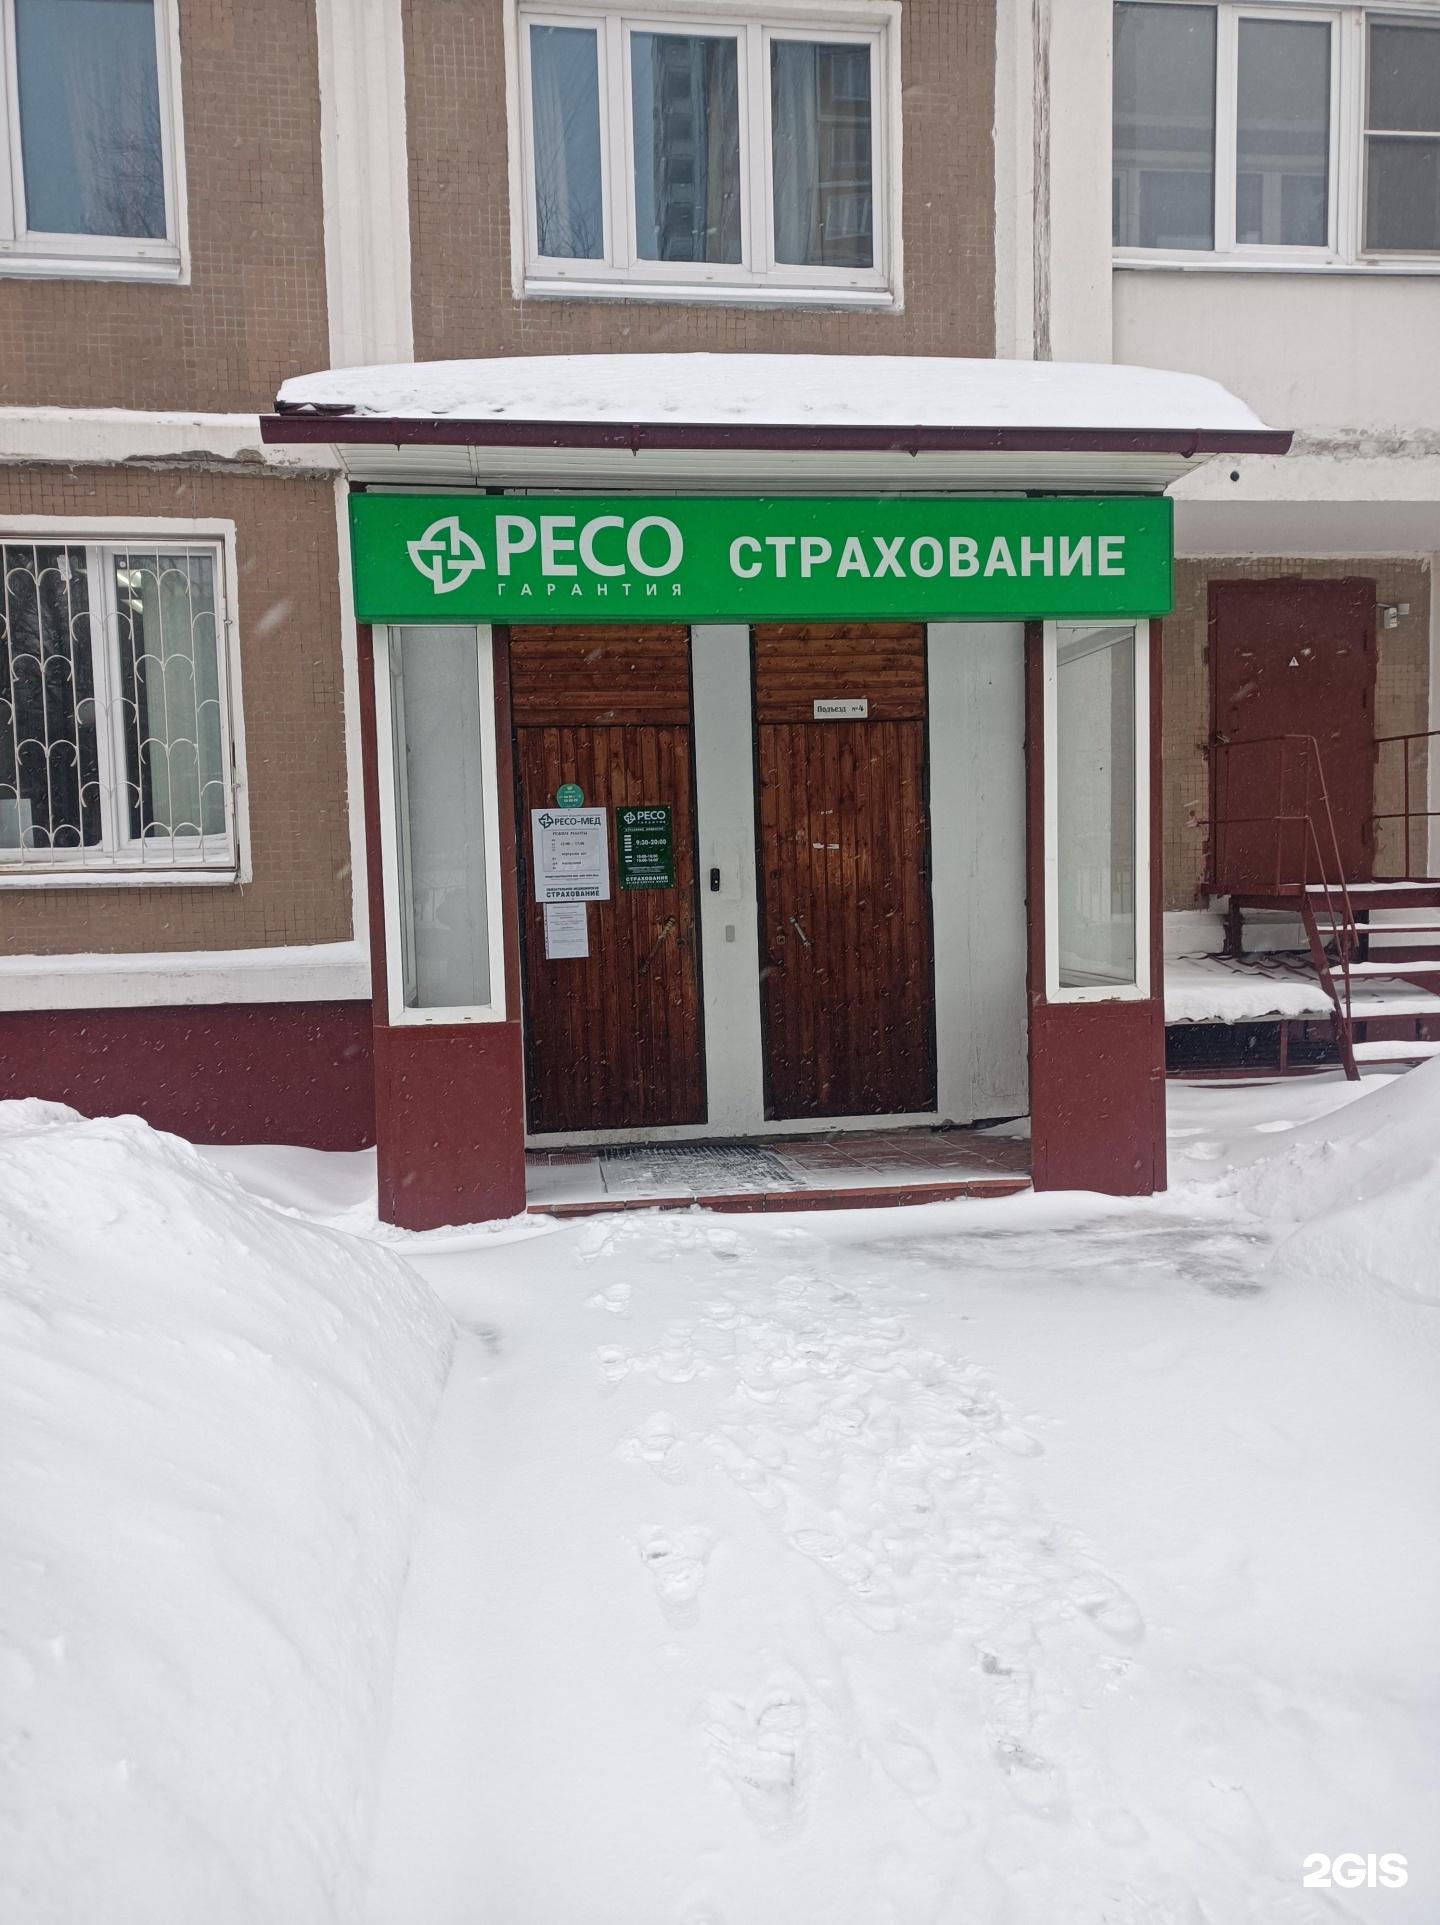 Ресо гарантия. Ресо страхование. Ресо-гарантия Новосибирск. Ресо гарантия г Лесной. Страховая ресо гарантия телефон